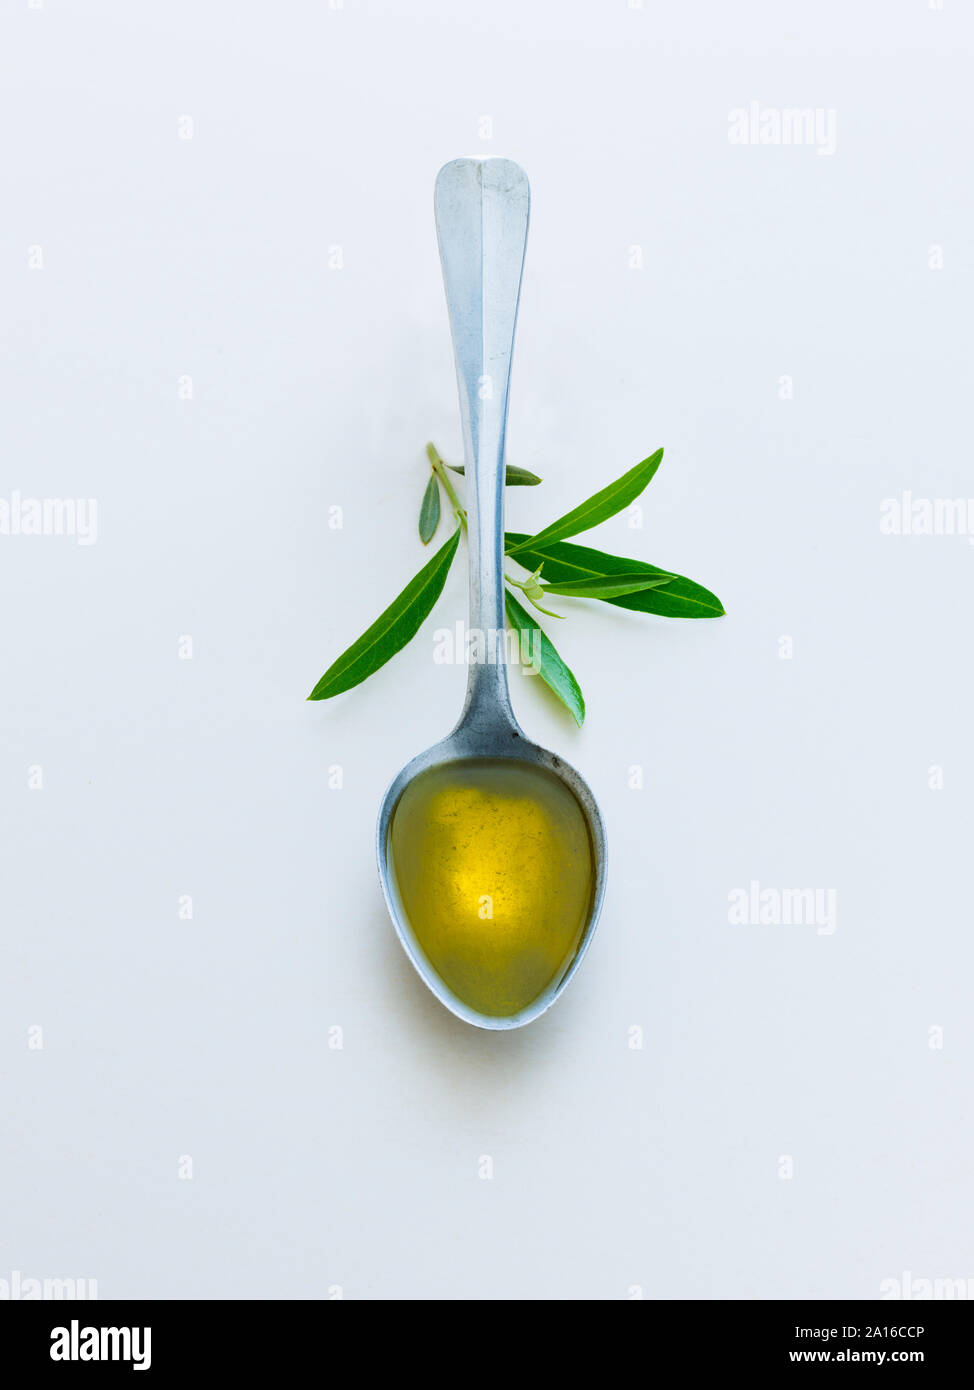 1 cucchiaio di olio di oliva con foglie di olivo Foto Stock